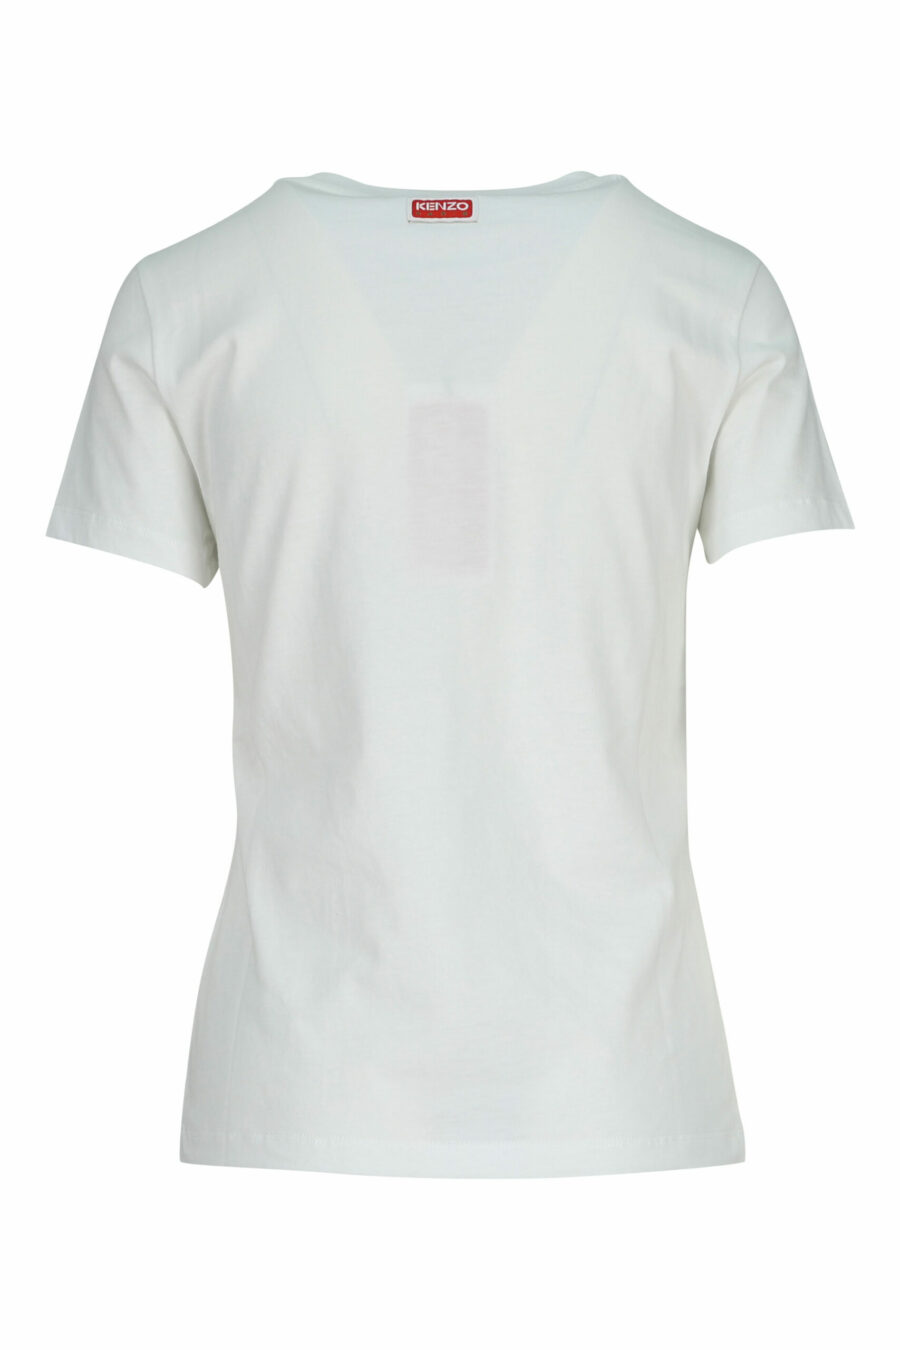 T-shirt blanc avec minilogo "kenzo elephant" - 3612230620117 3 scaled